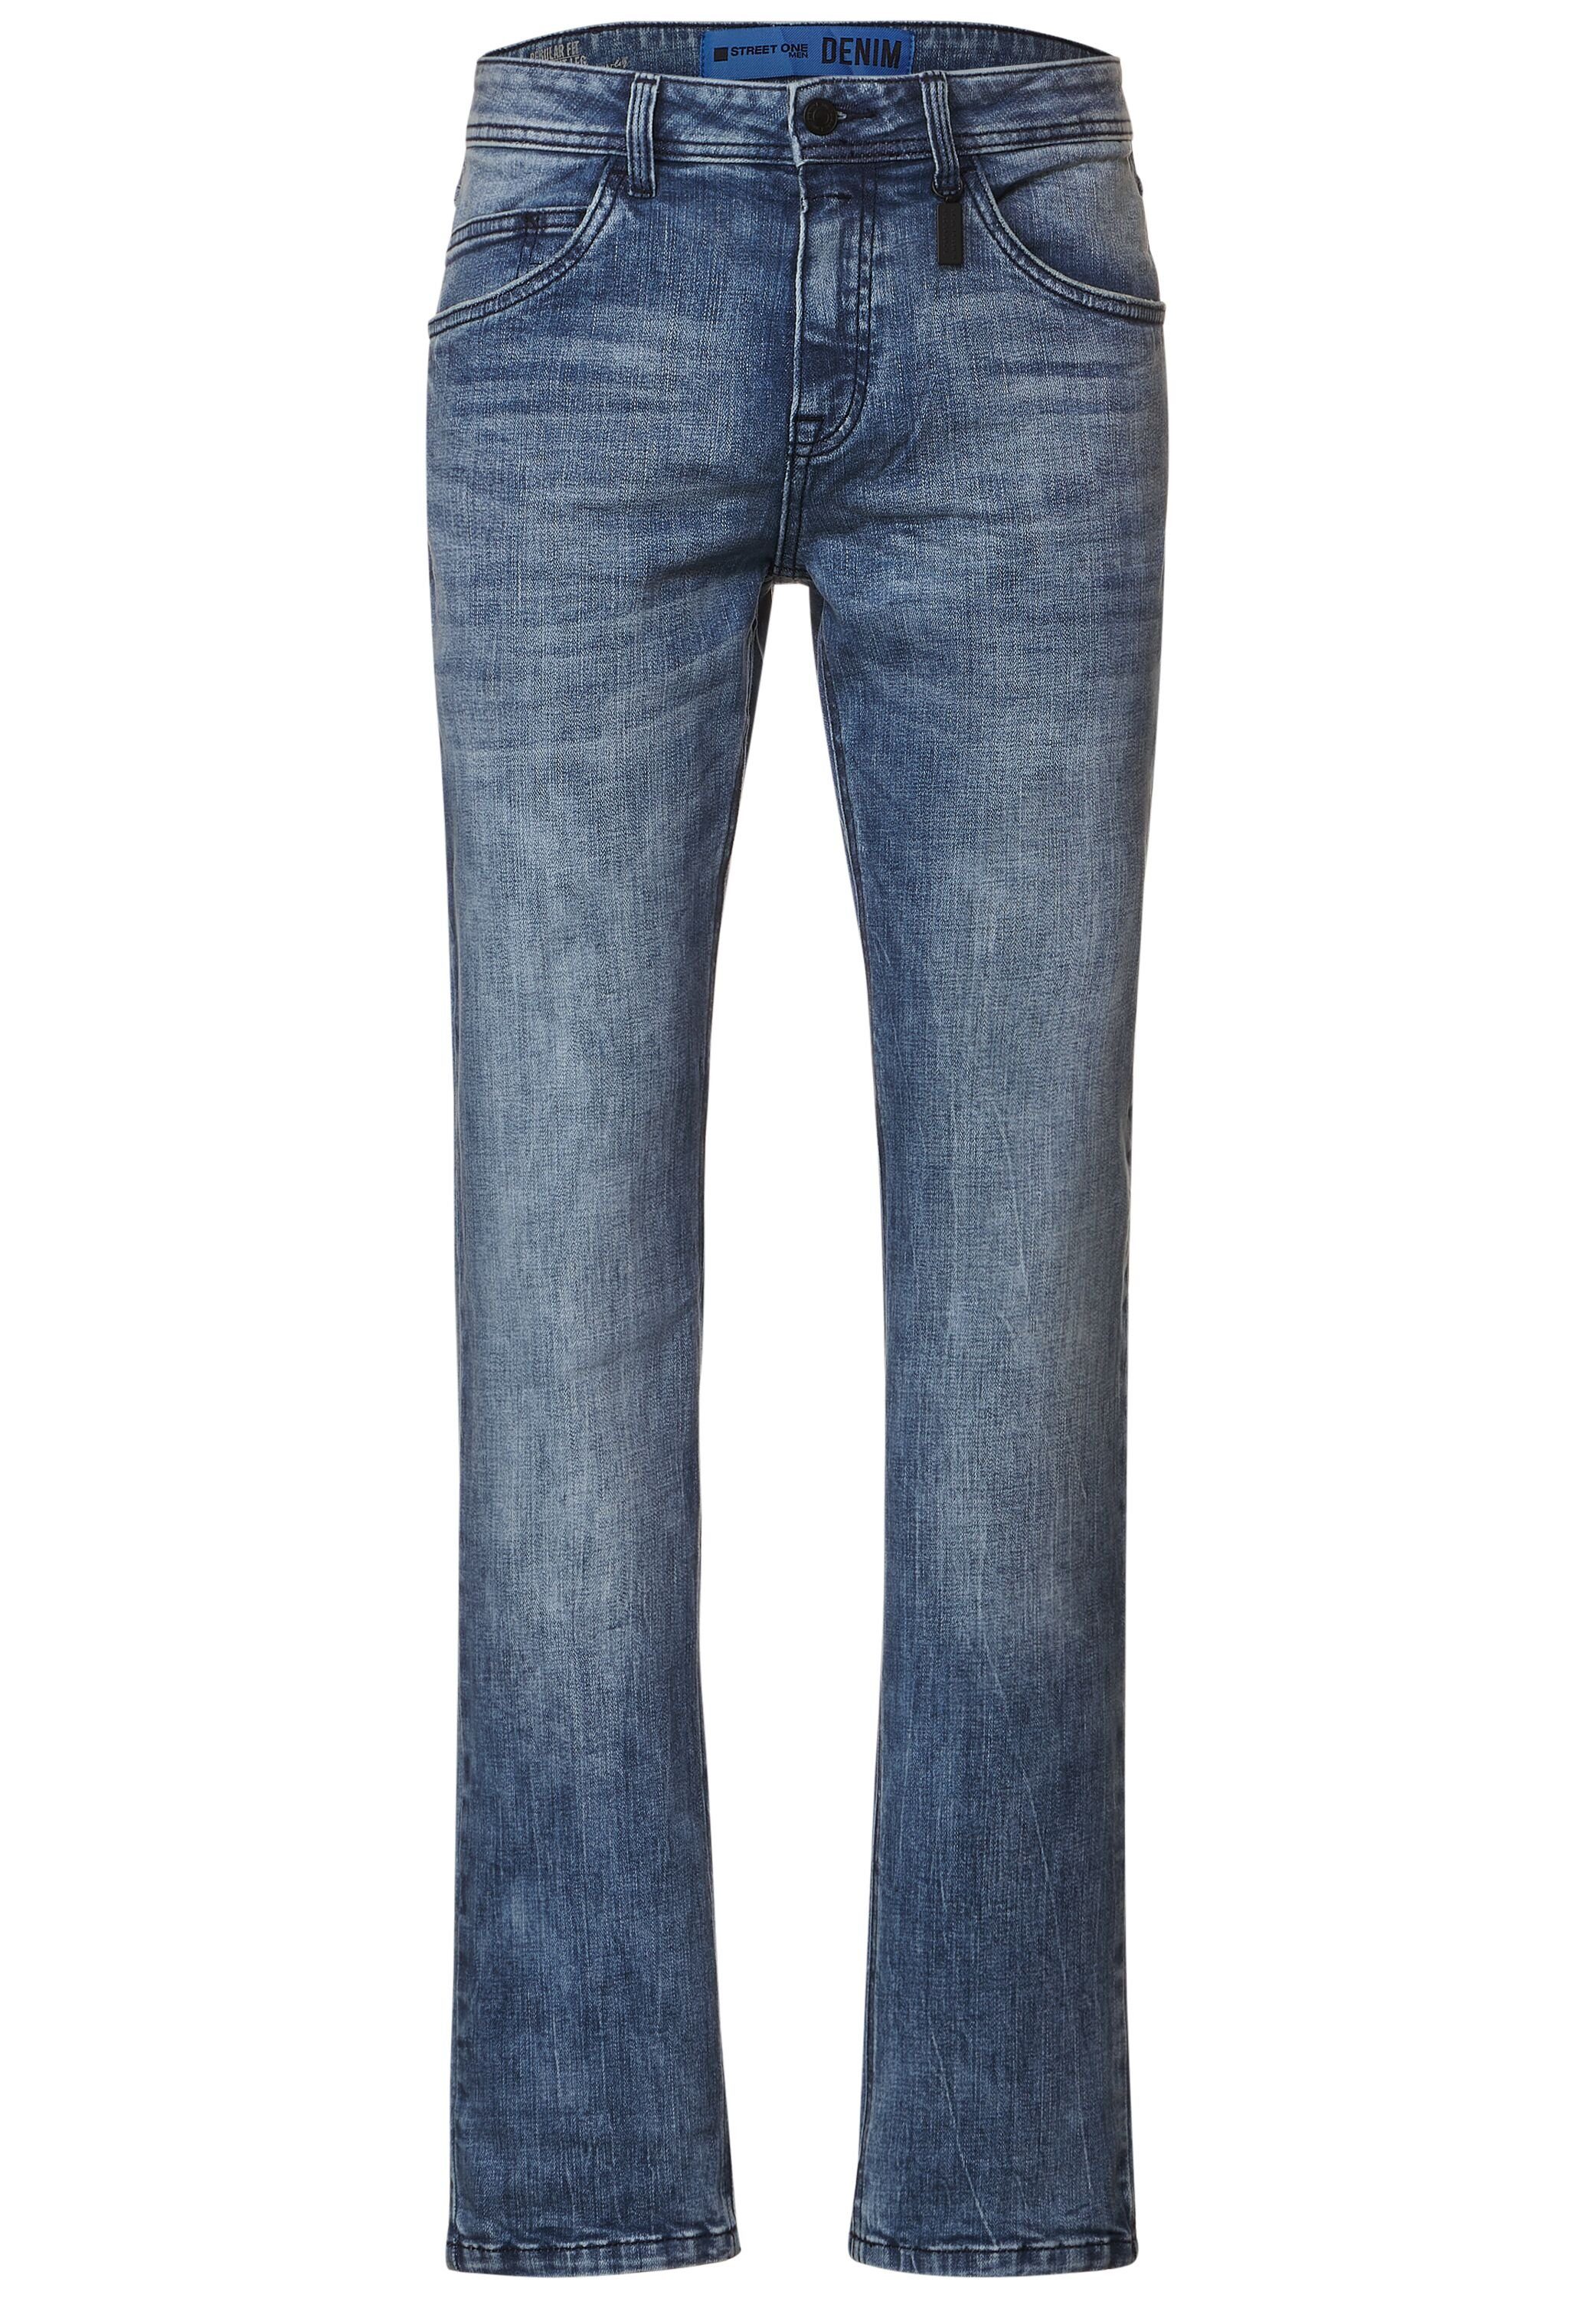 Baumwolle MEN aus Comfort-fit-Jeans Stretchanteil ONE STREET mit